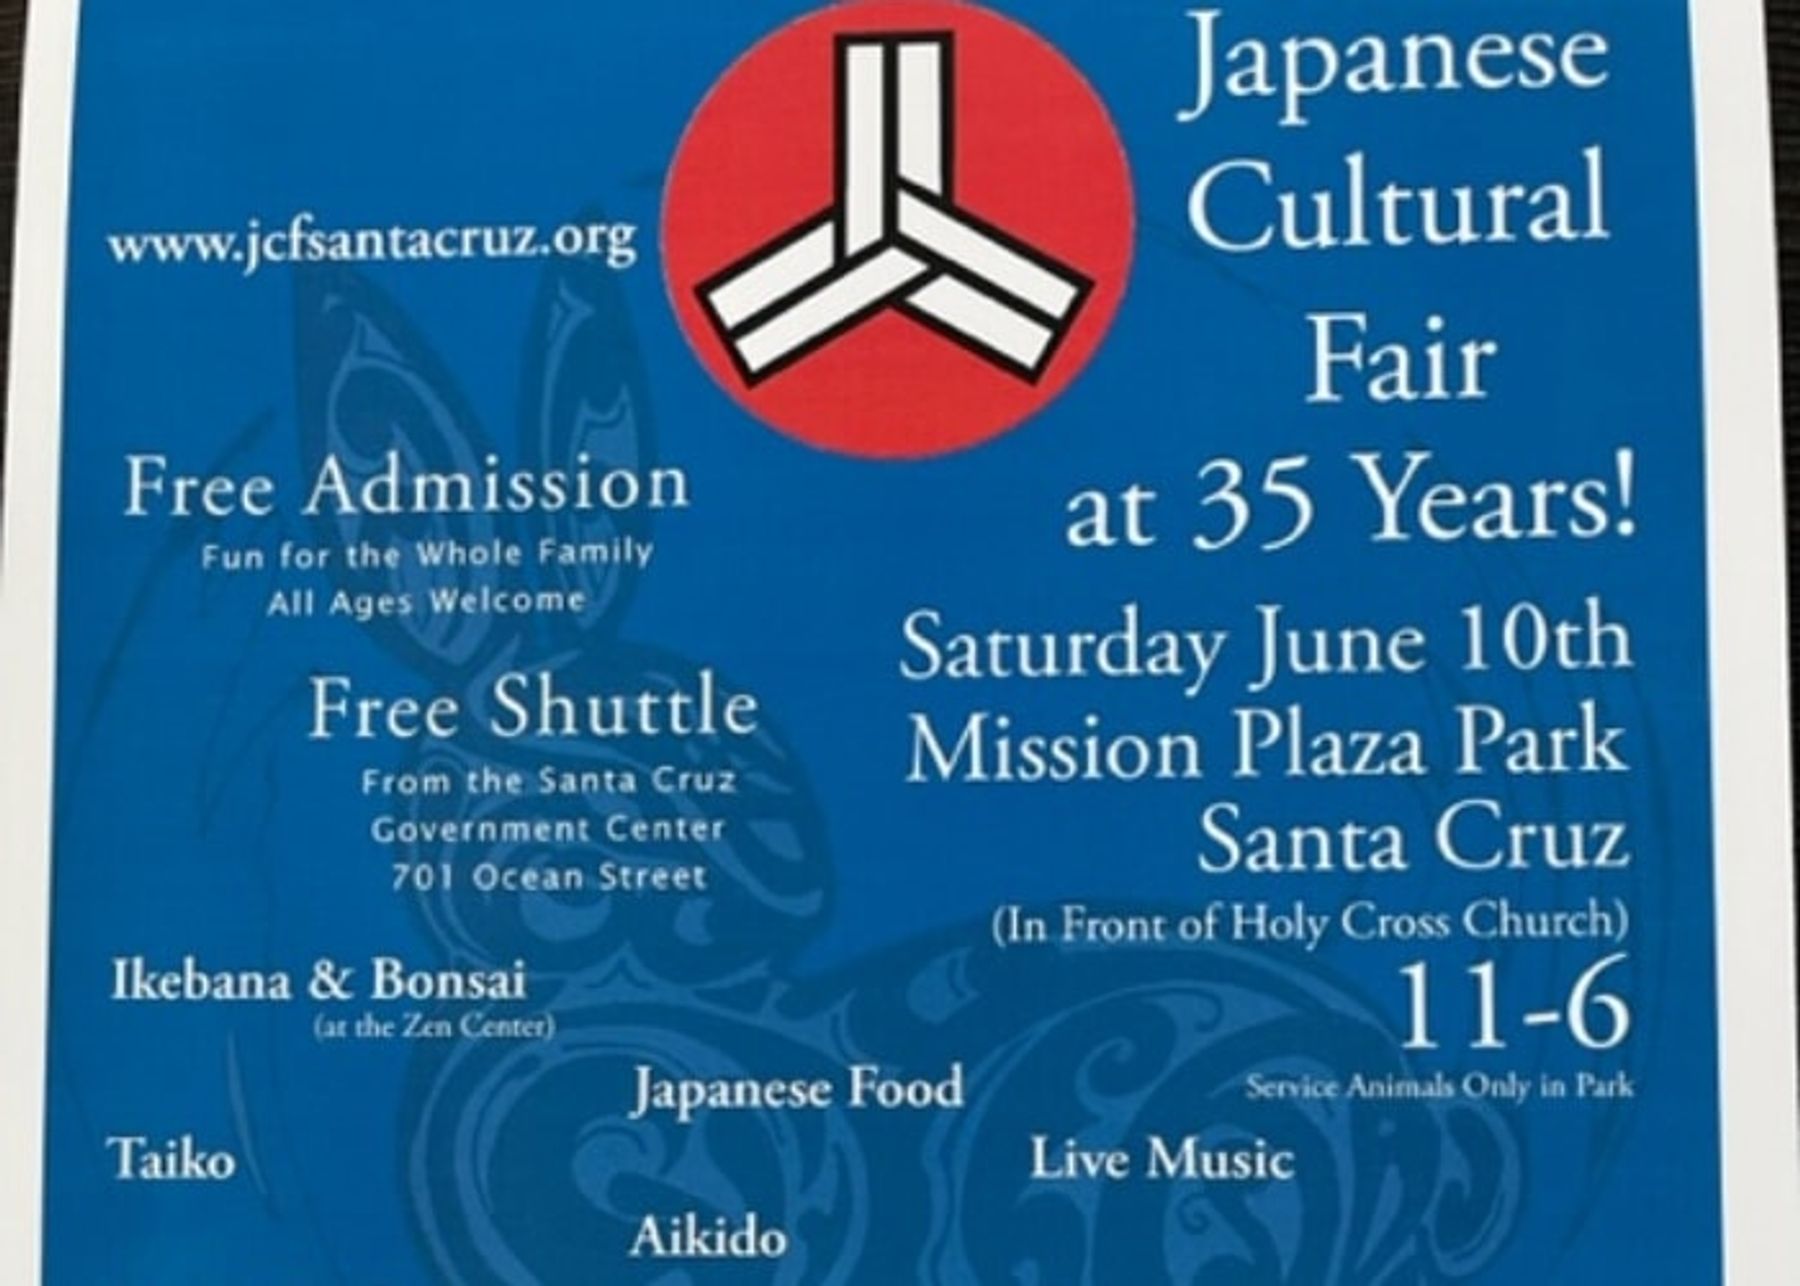 Japanese Cultural Fair Downtown Santa Cruz, CA